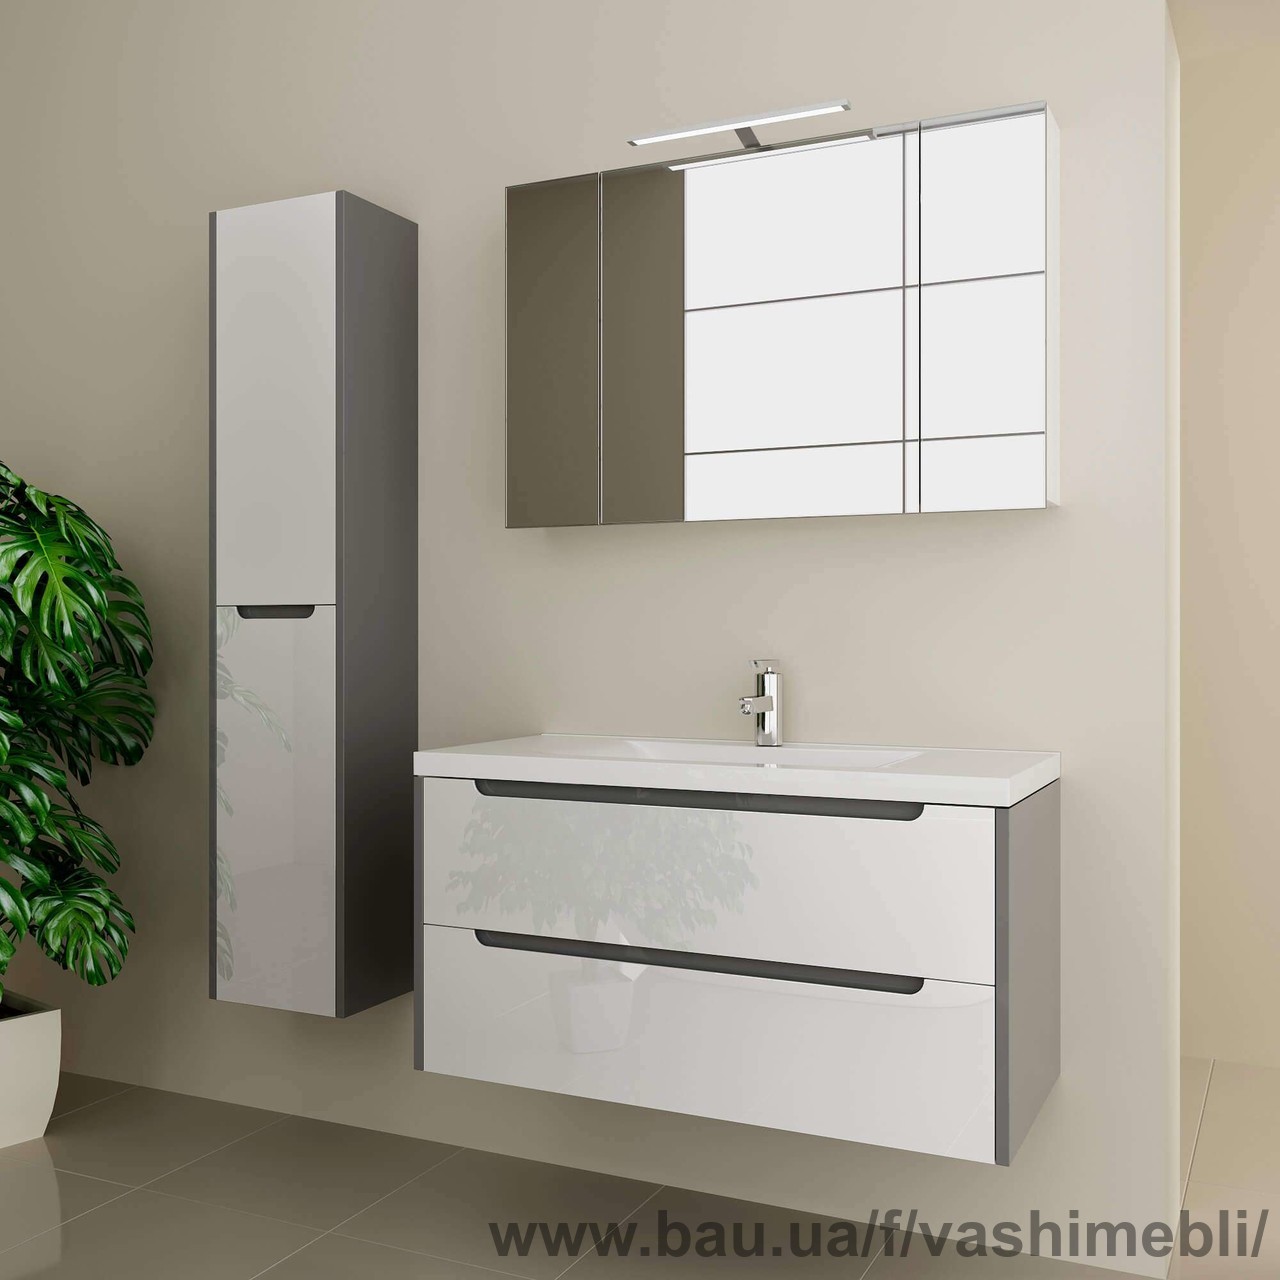 Новый комплект мебели для ванной комнаты и дома